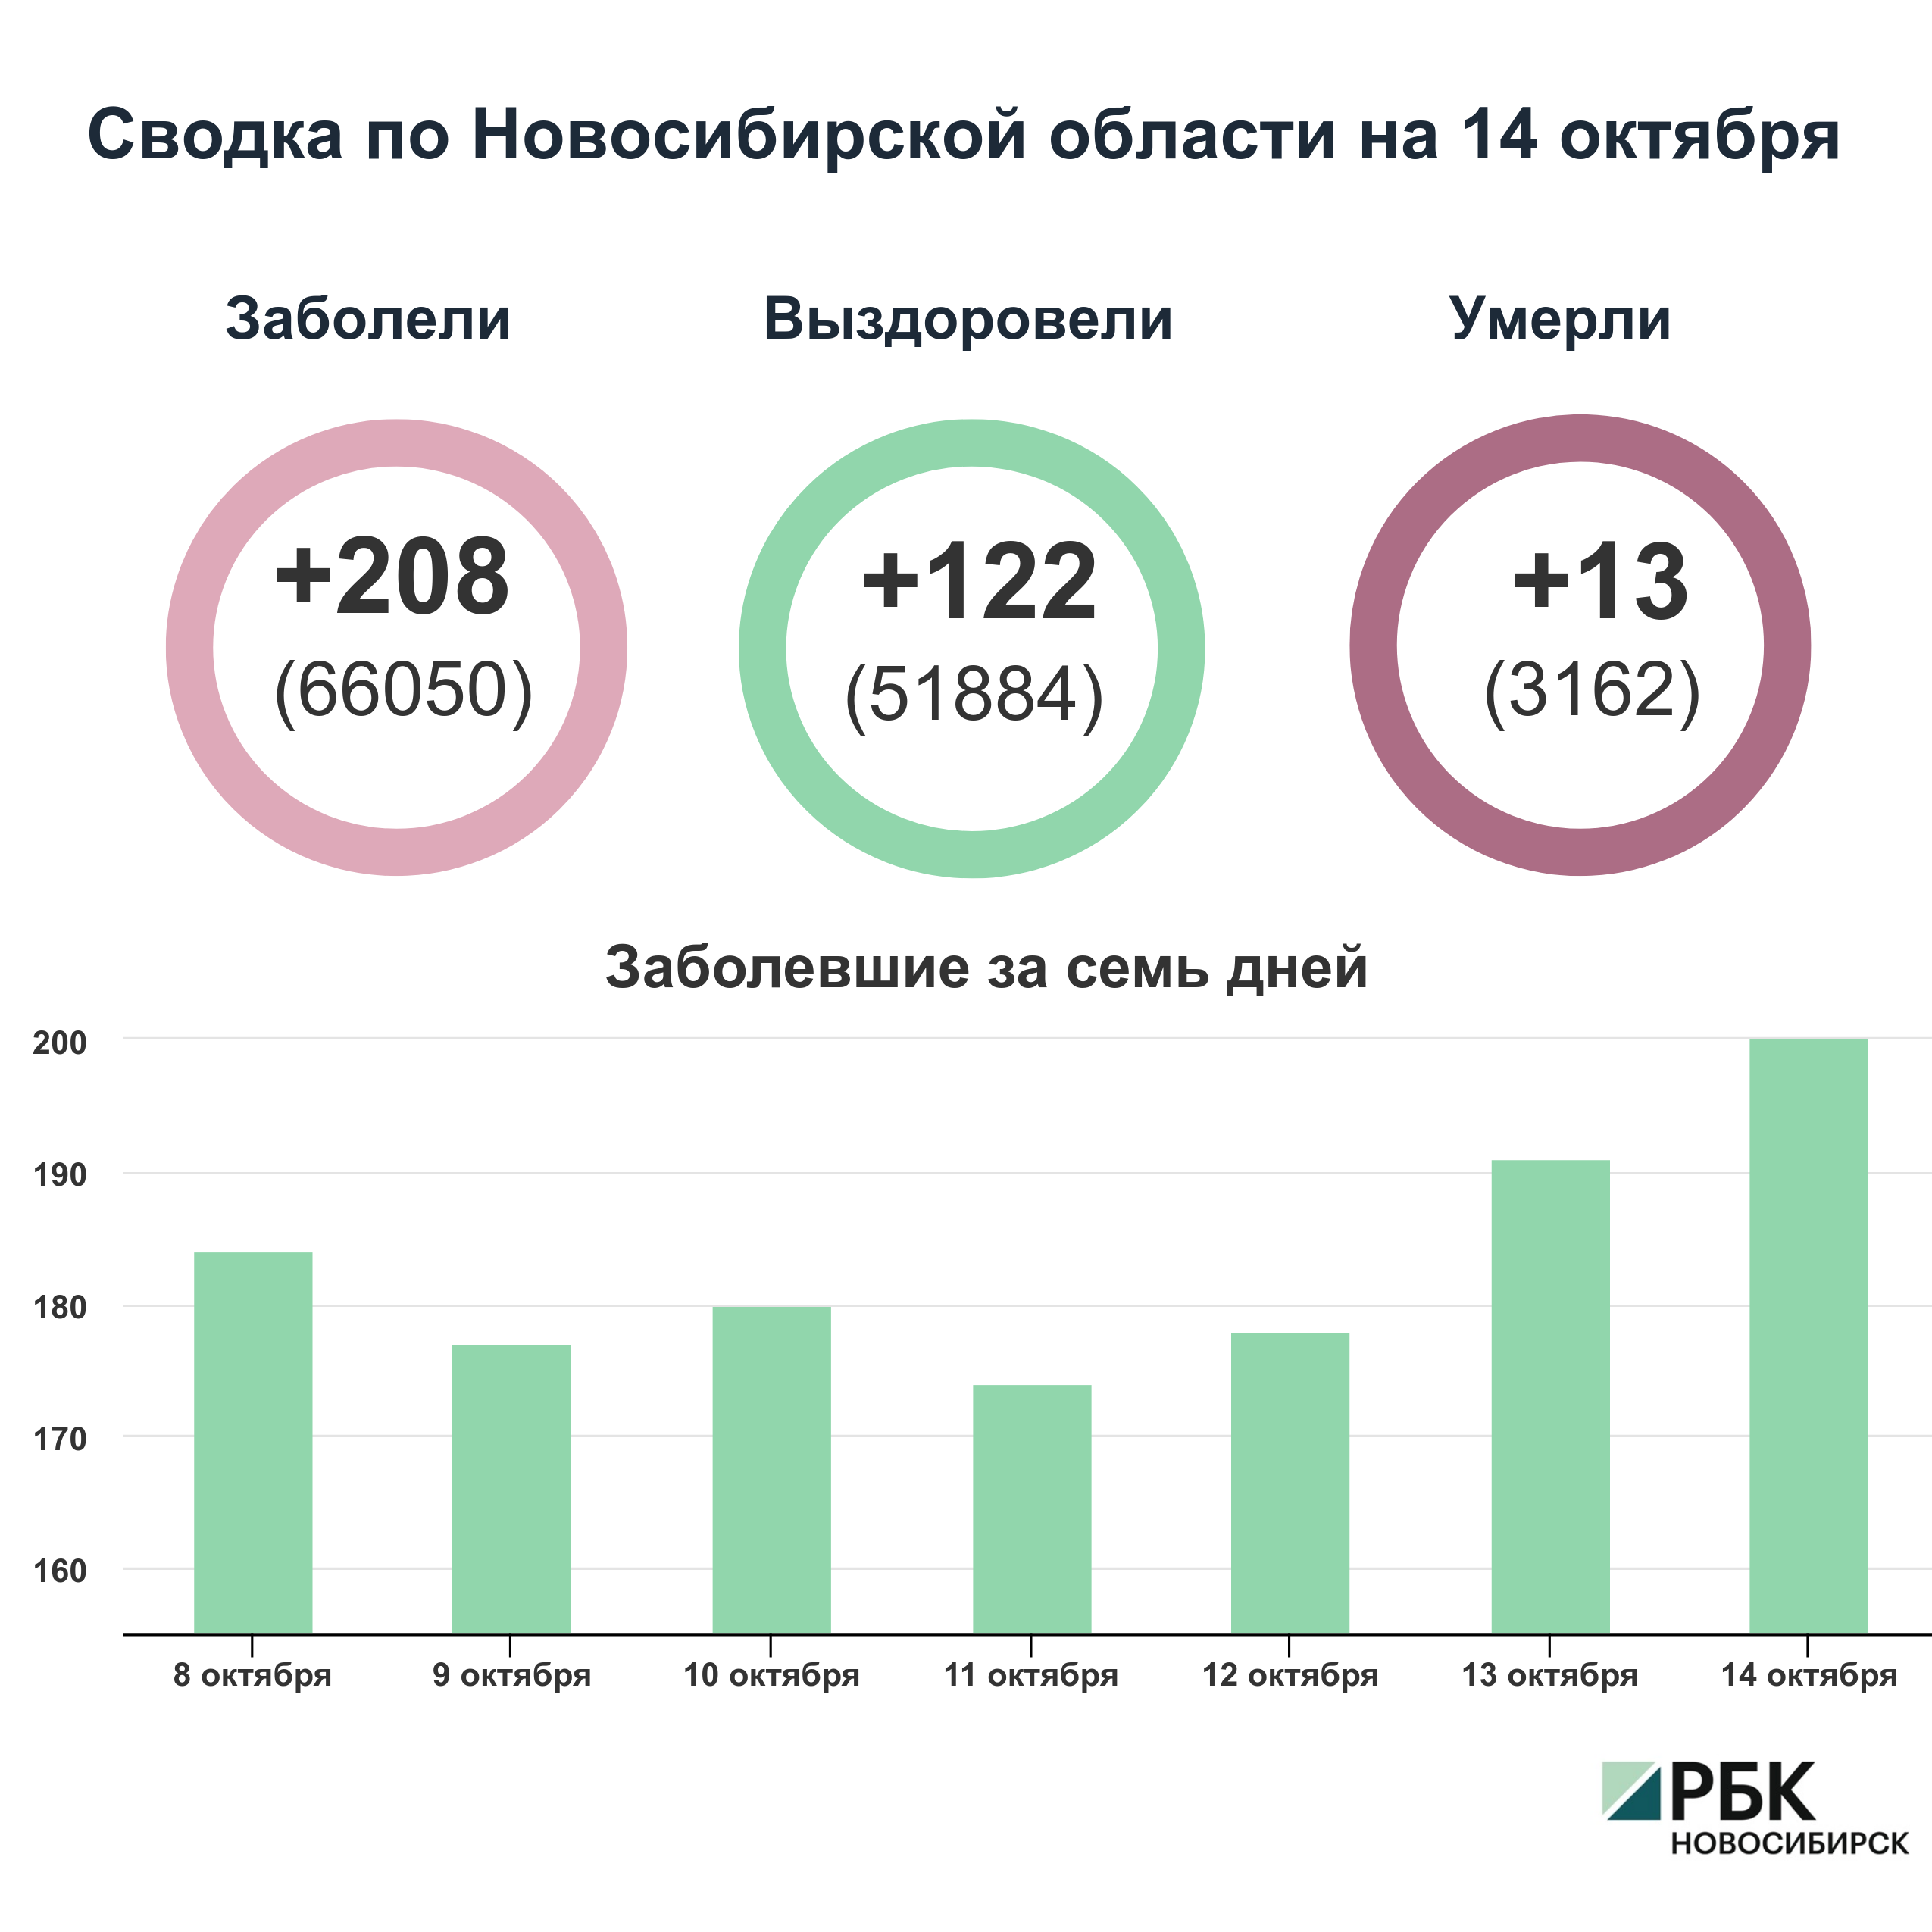 Коронавирус в Новосибирске: сводка на 14 октября